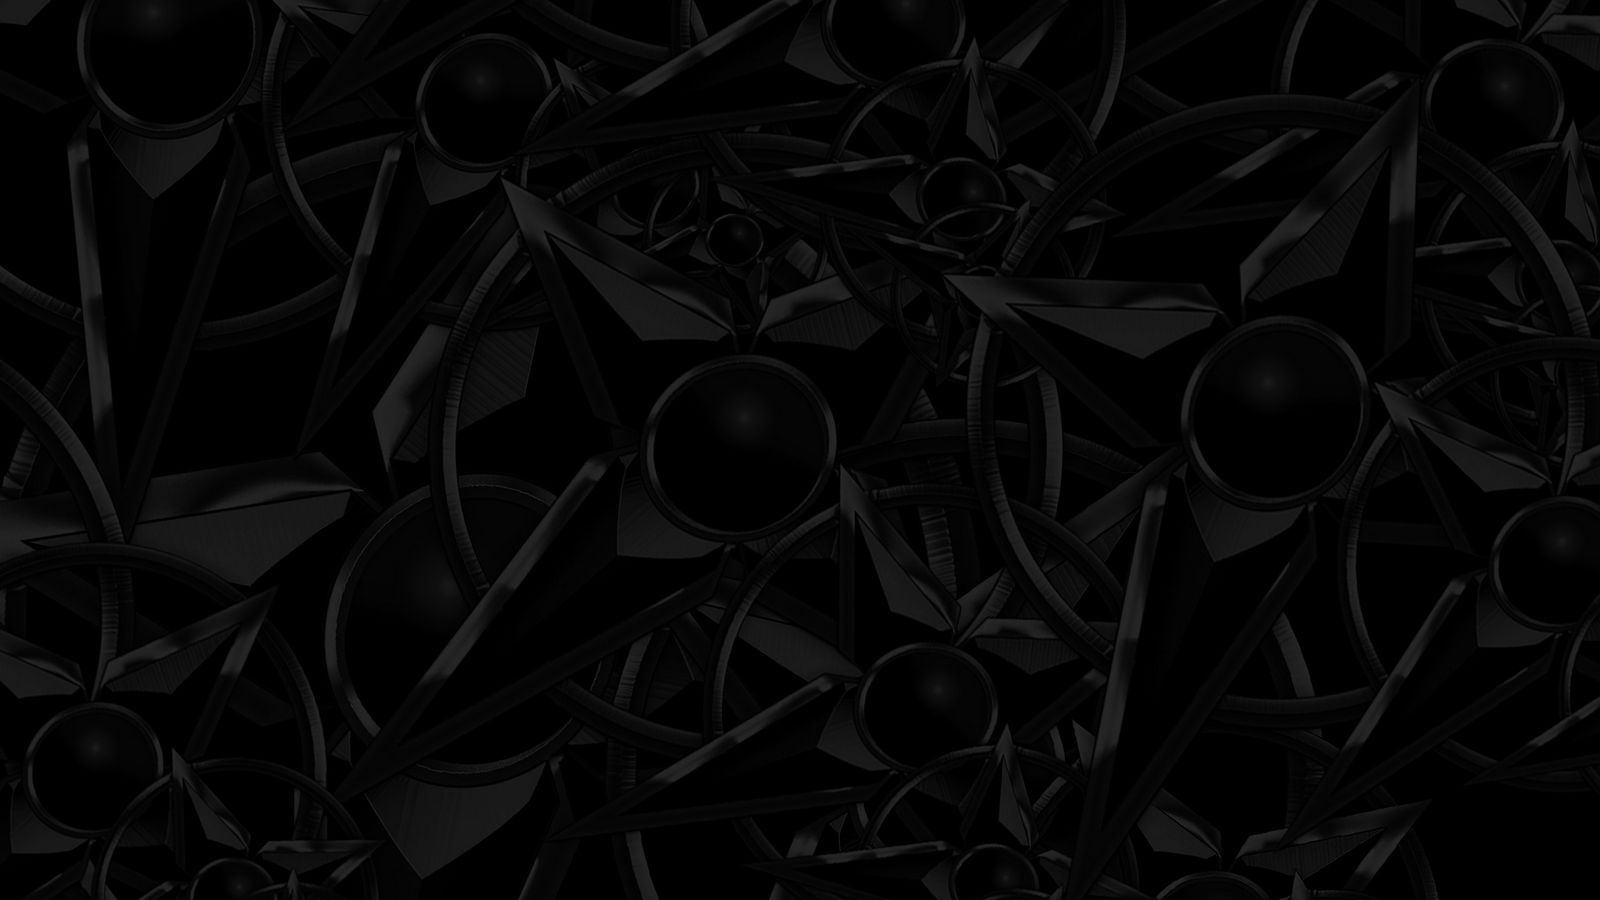 Hình nền cấu trúc đen là lựa chọn hàng đầu của những người yêu thích sự đậm đà và thô kệnh. Điểm nhấn về cấu trúc đen trên nền tối sẽ khiến cho màn hình trông lạ mắt nhưng vẫn sang trọng. Hãy thử sự nhạy cảm này và tìm kiếm những khoảnh khắc khác biệt mà một lựa chọn hình nền tuyệt vời có thể mang lại.